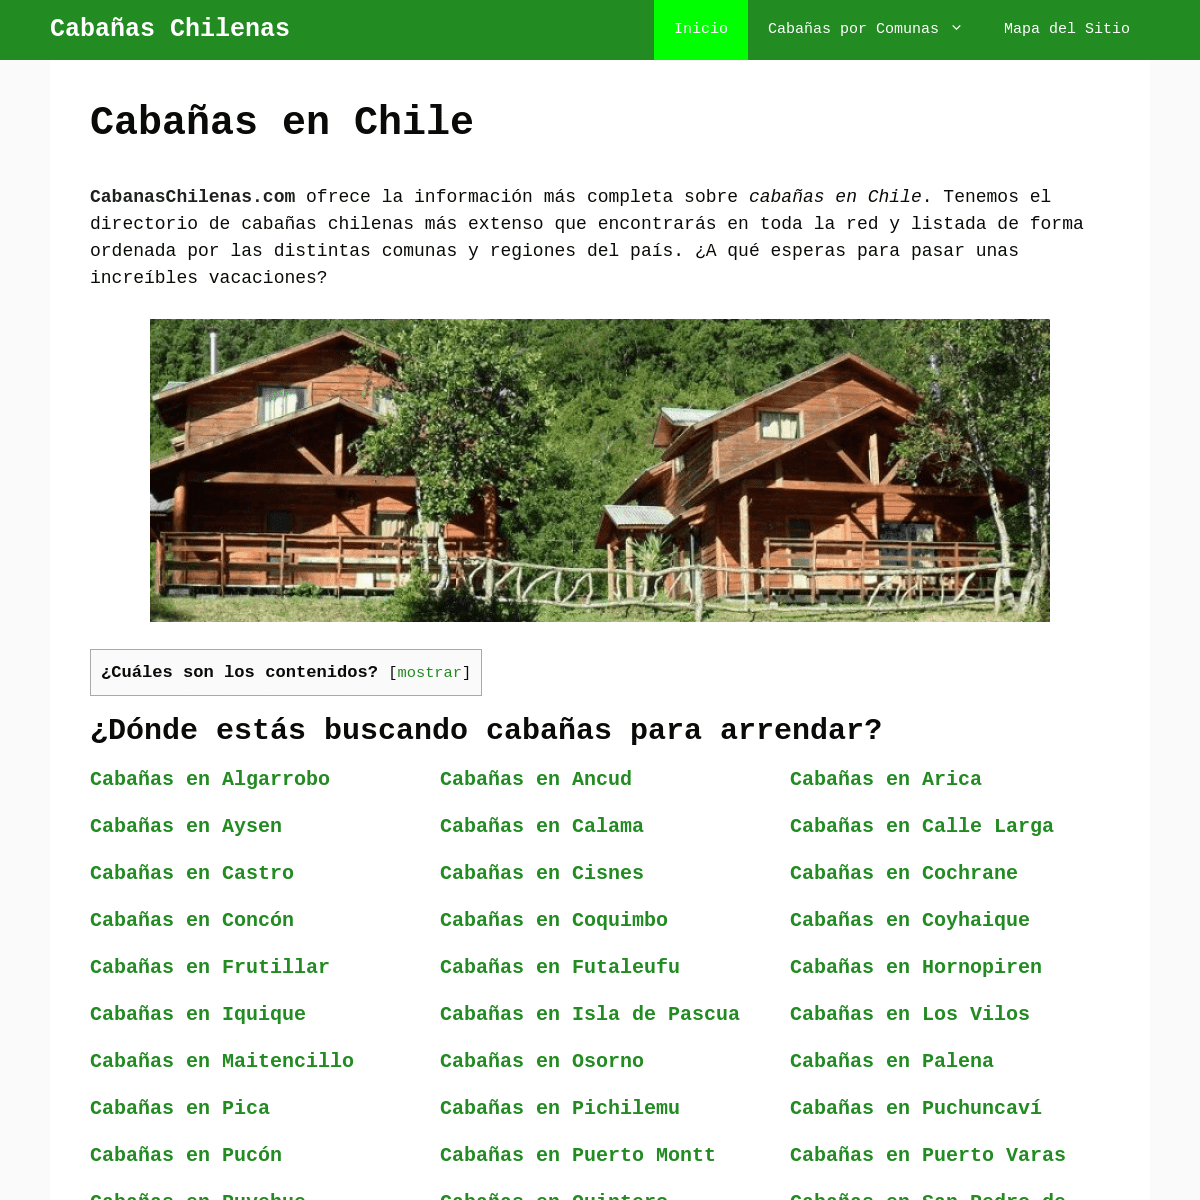 A complete backup of https://cabanaschilenas.com